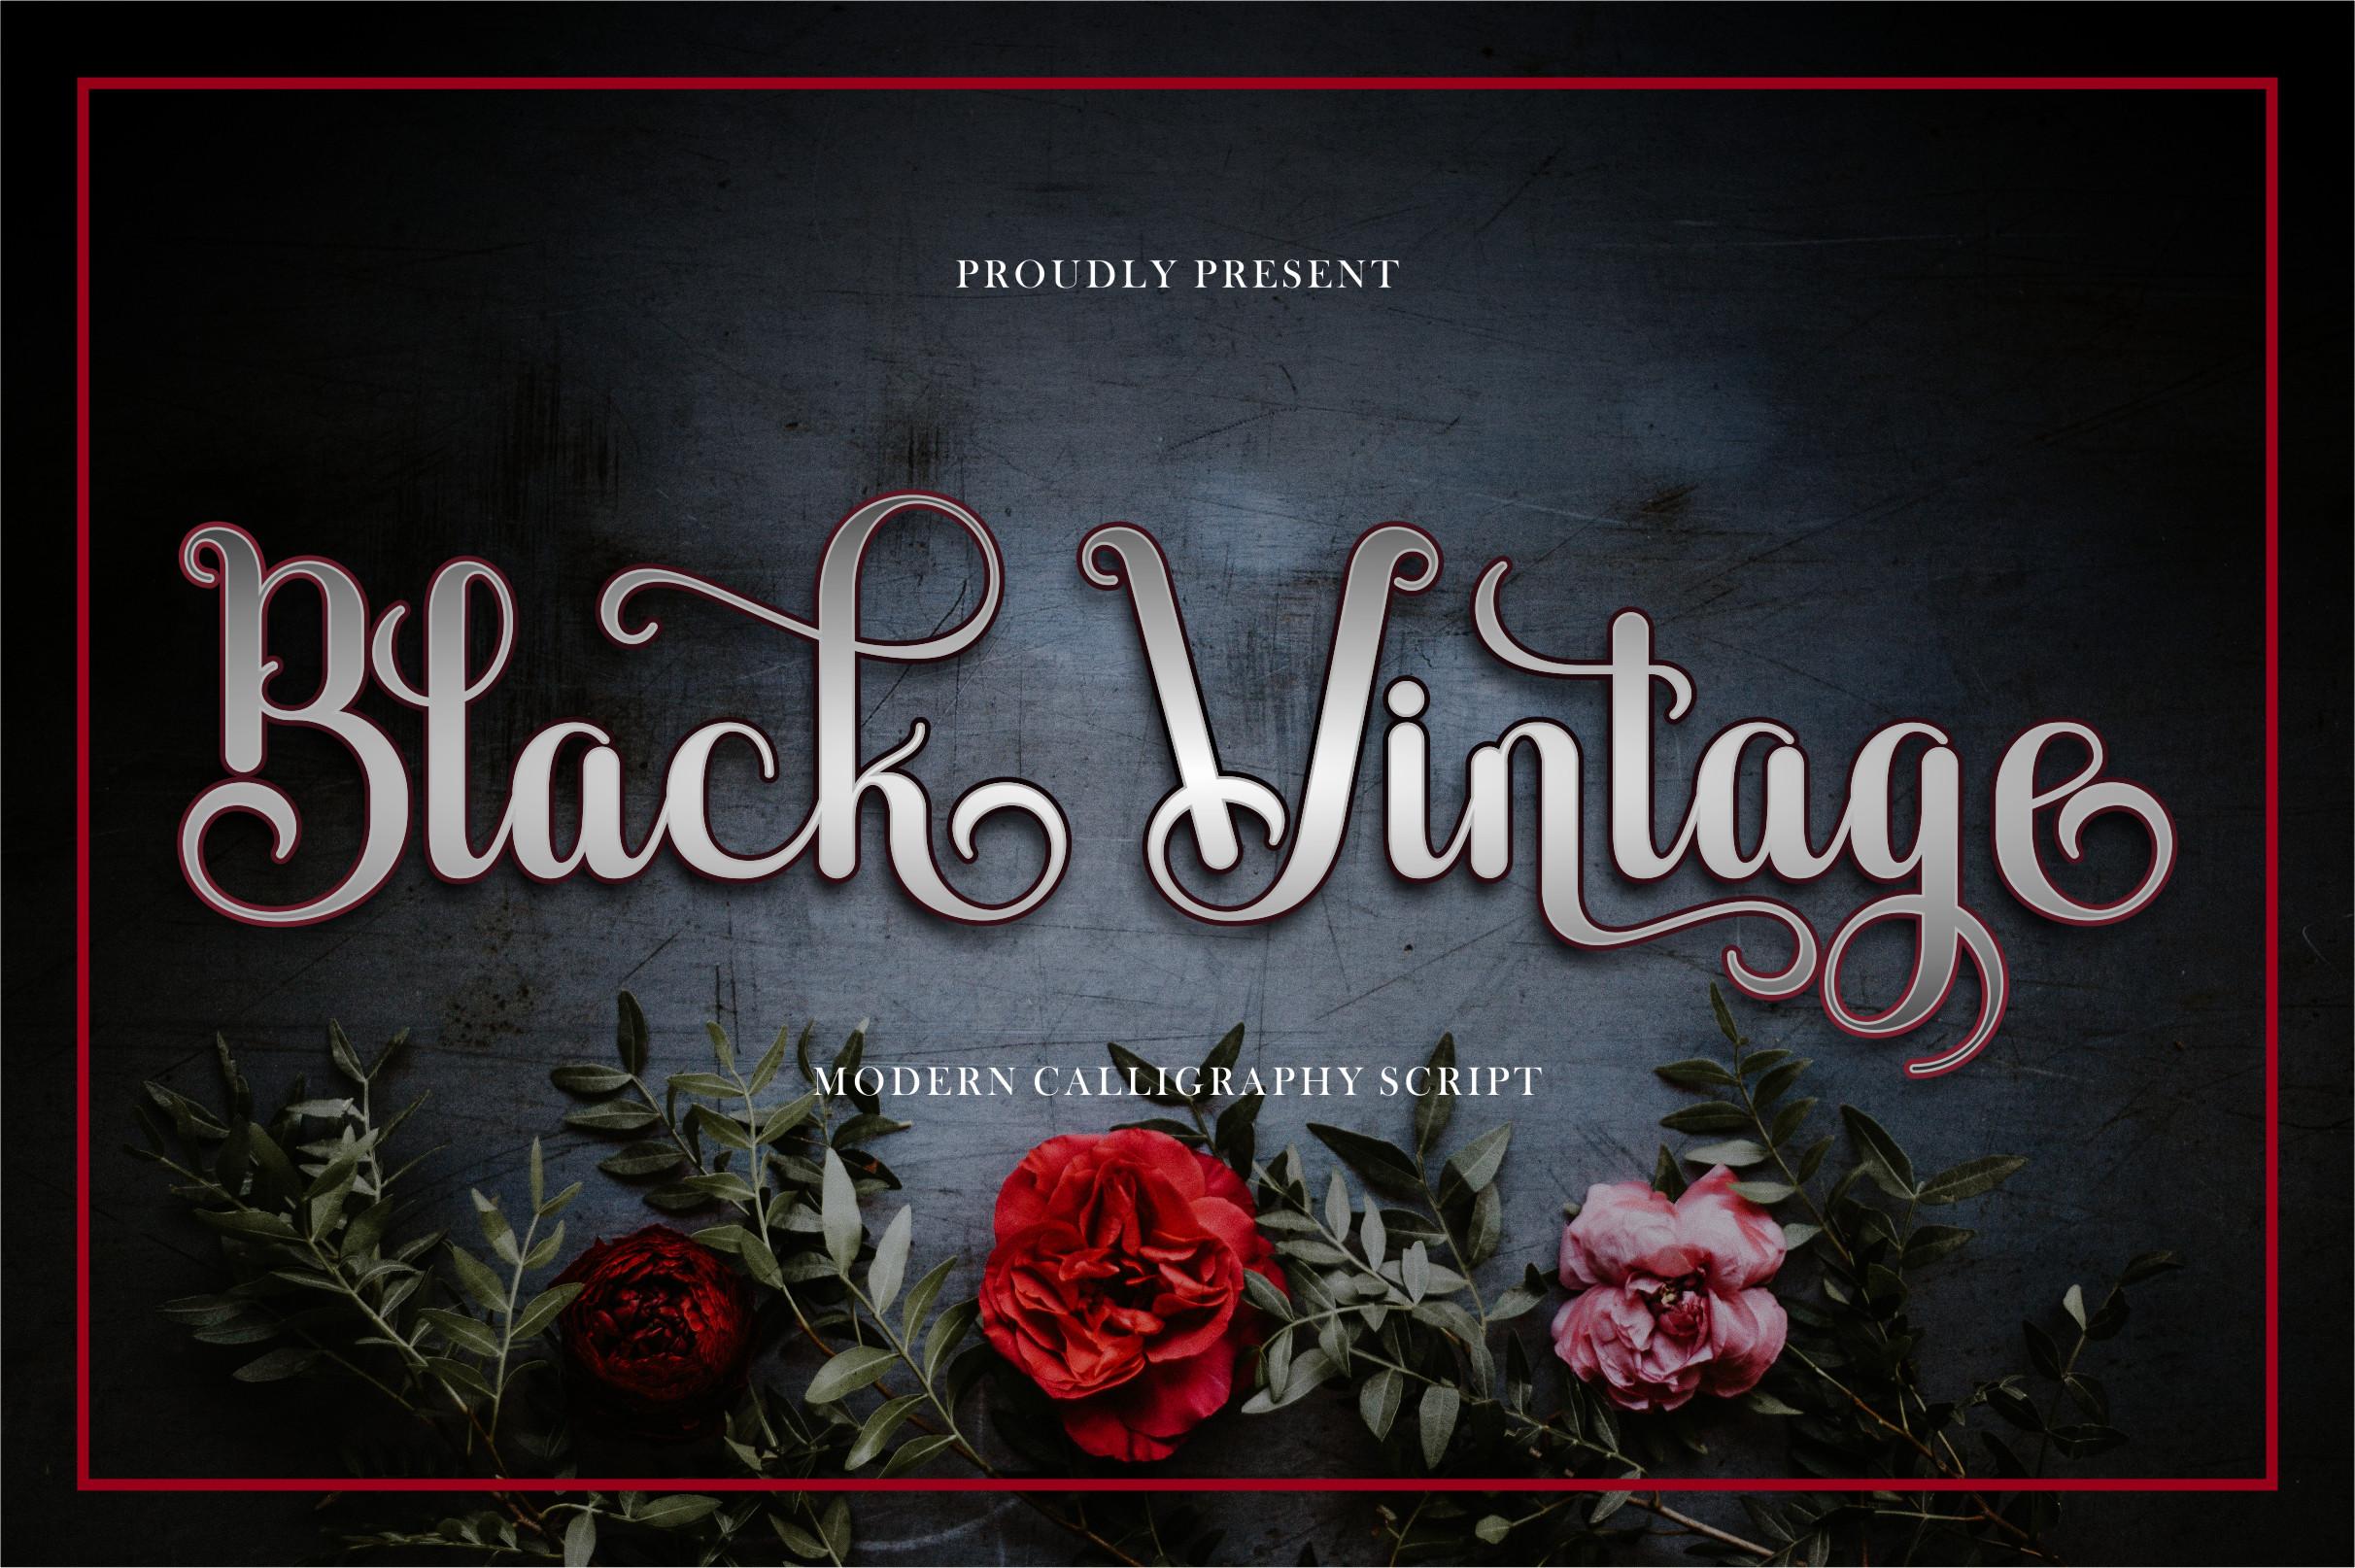 Black Vintage Font